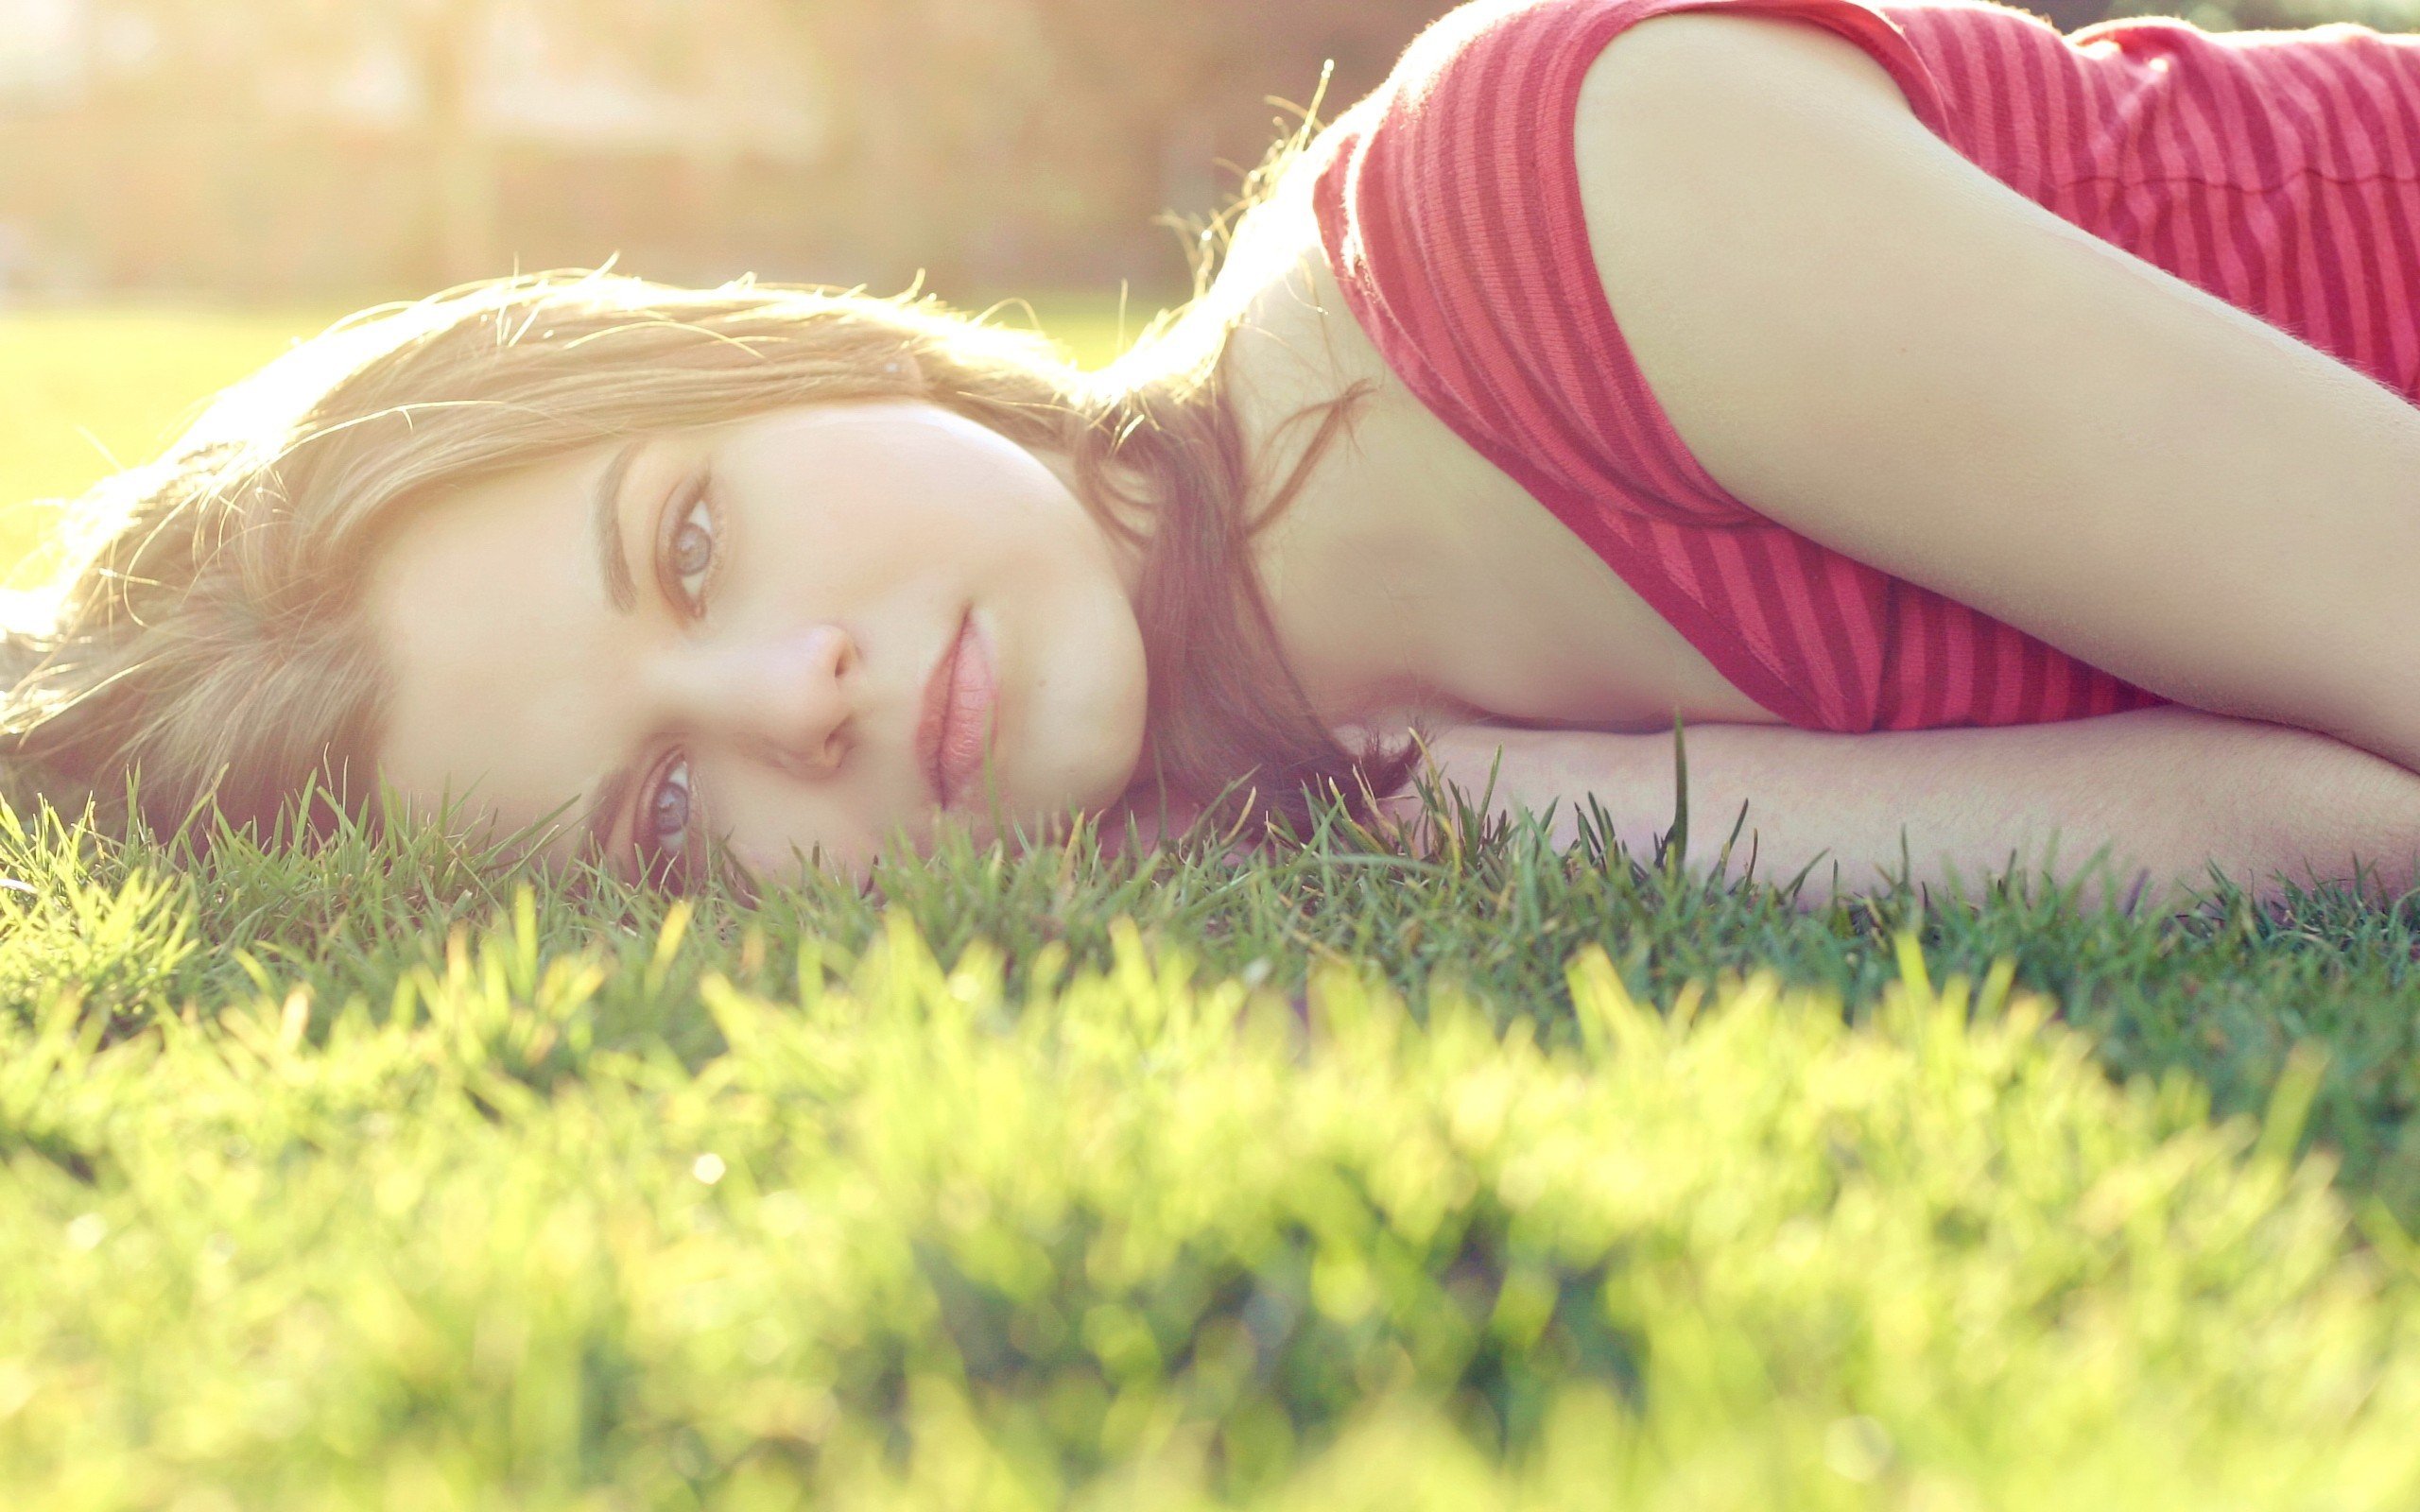 women, Women outdoors, Sunlight, Grass, Brunette, Lying down, Blue eyes Wallpaper